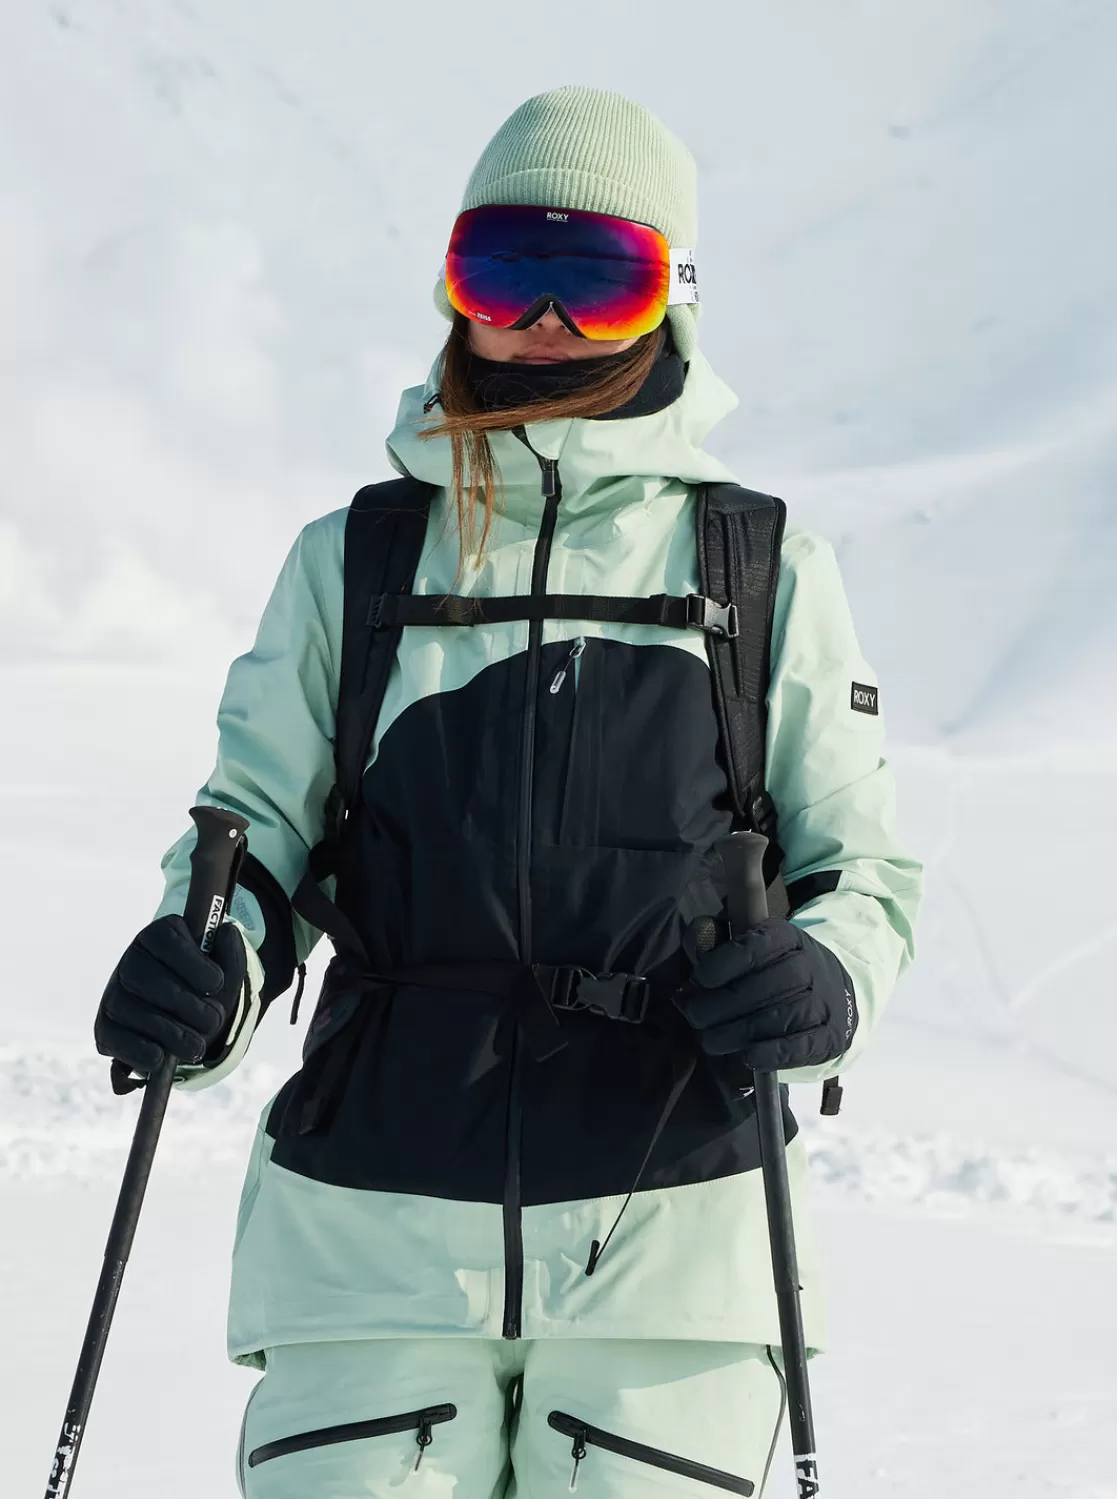 Gore-Texu00ae Lunalite 3L Technical Snow Jacket-ROXY Cheap